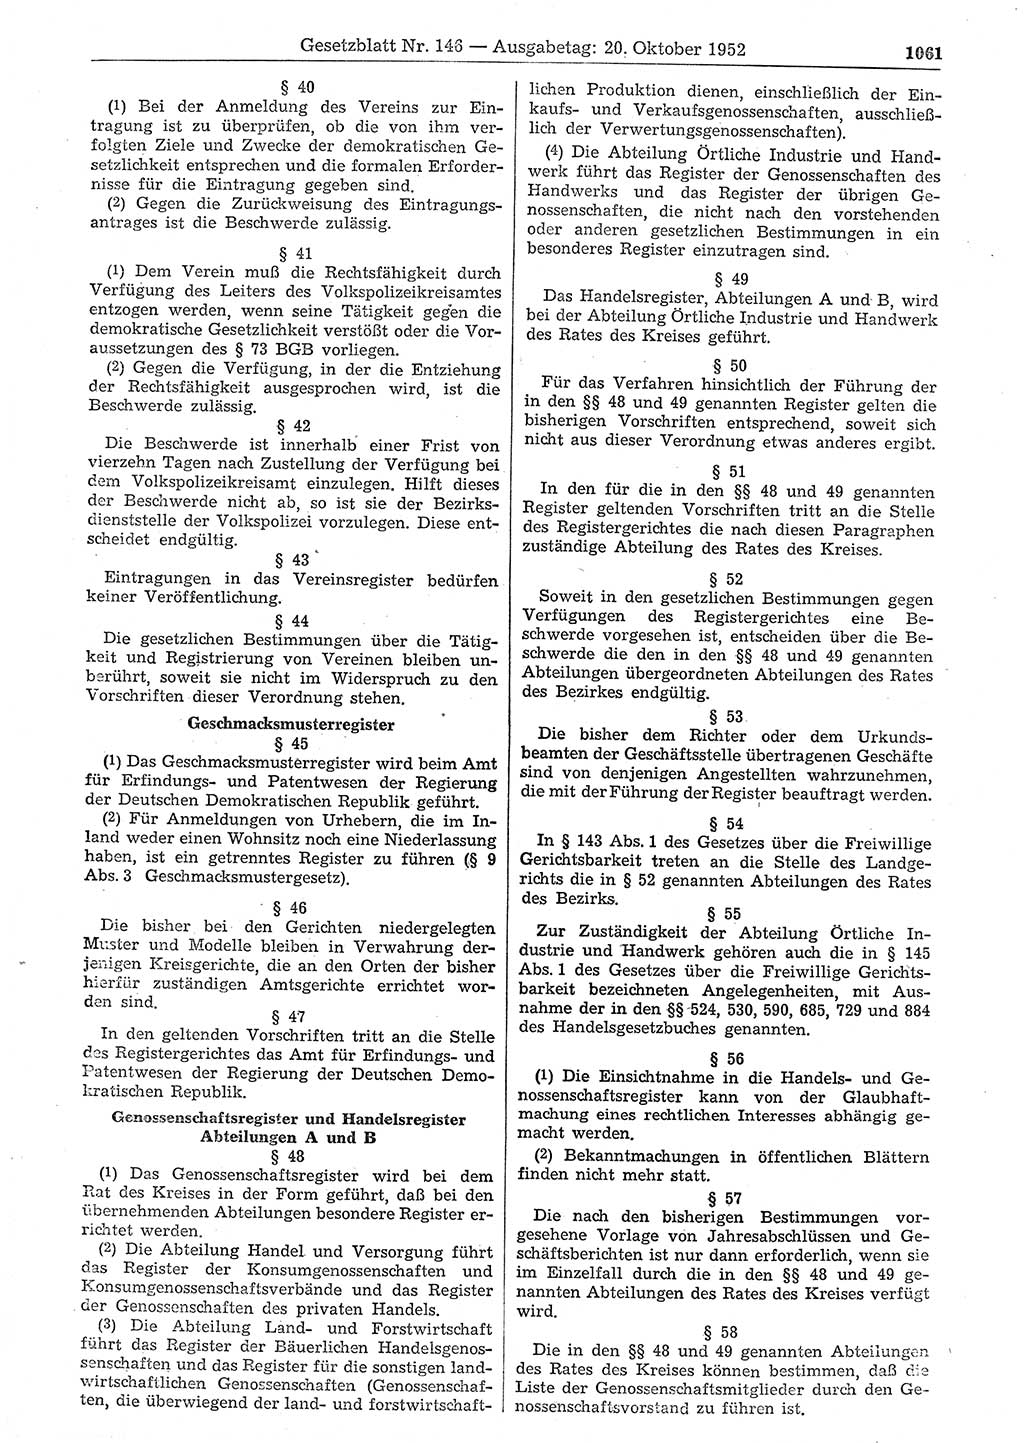 Gesetzblatt (GBl.) der Deutschen Demokratischen Republik (DDR) 1952, Seite 1061 (GBl. DDR 1952, S. 1061)